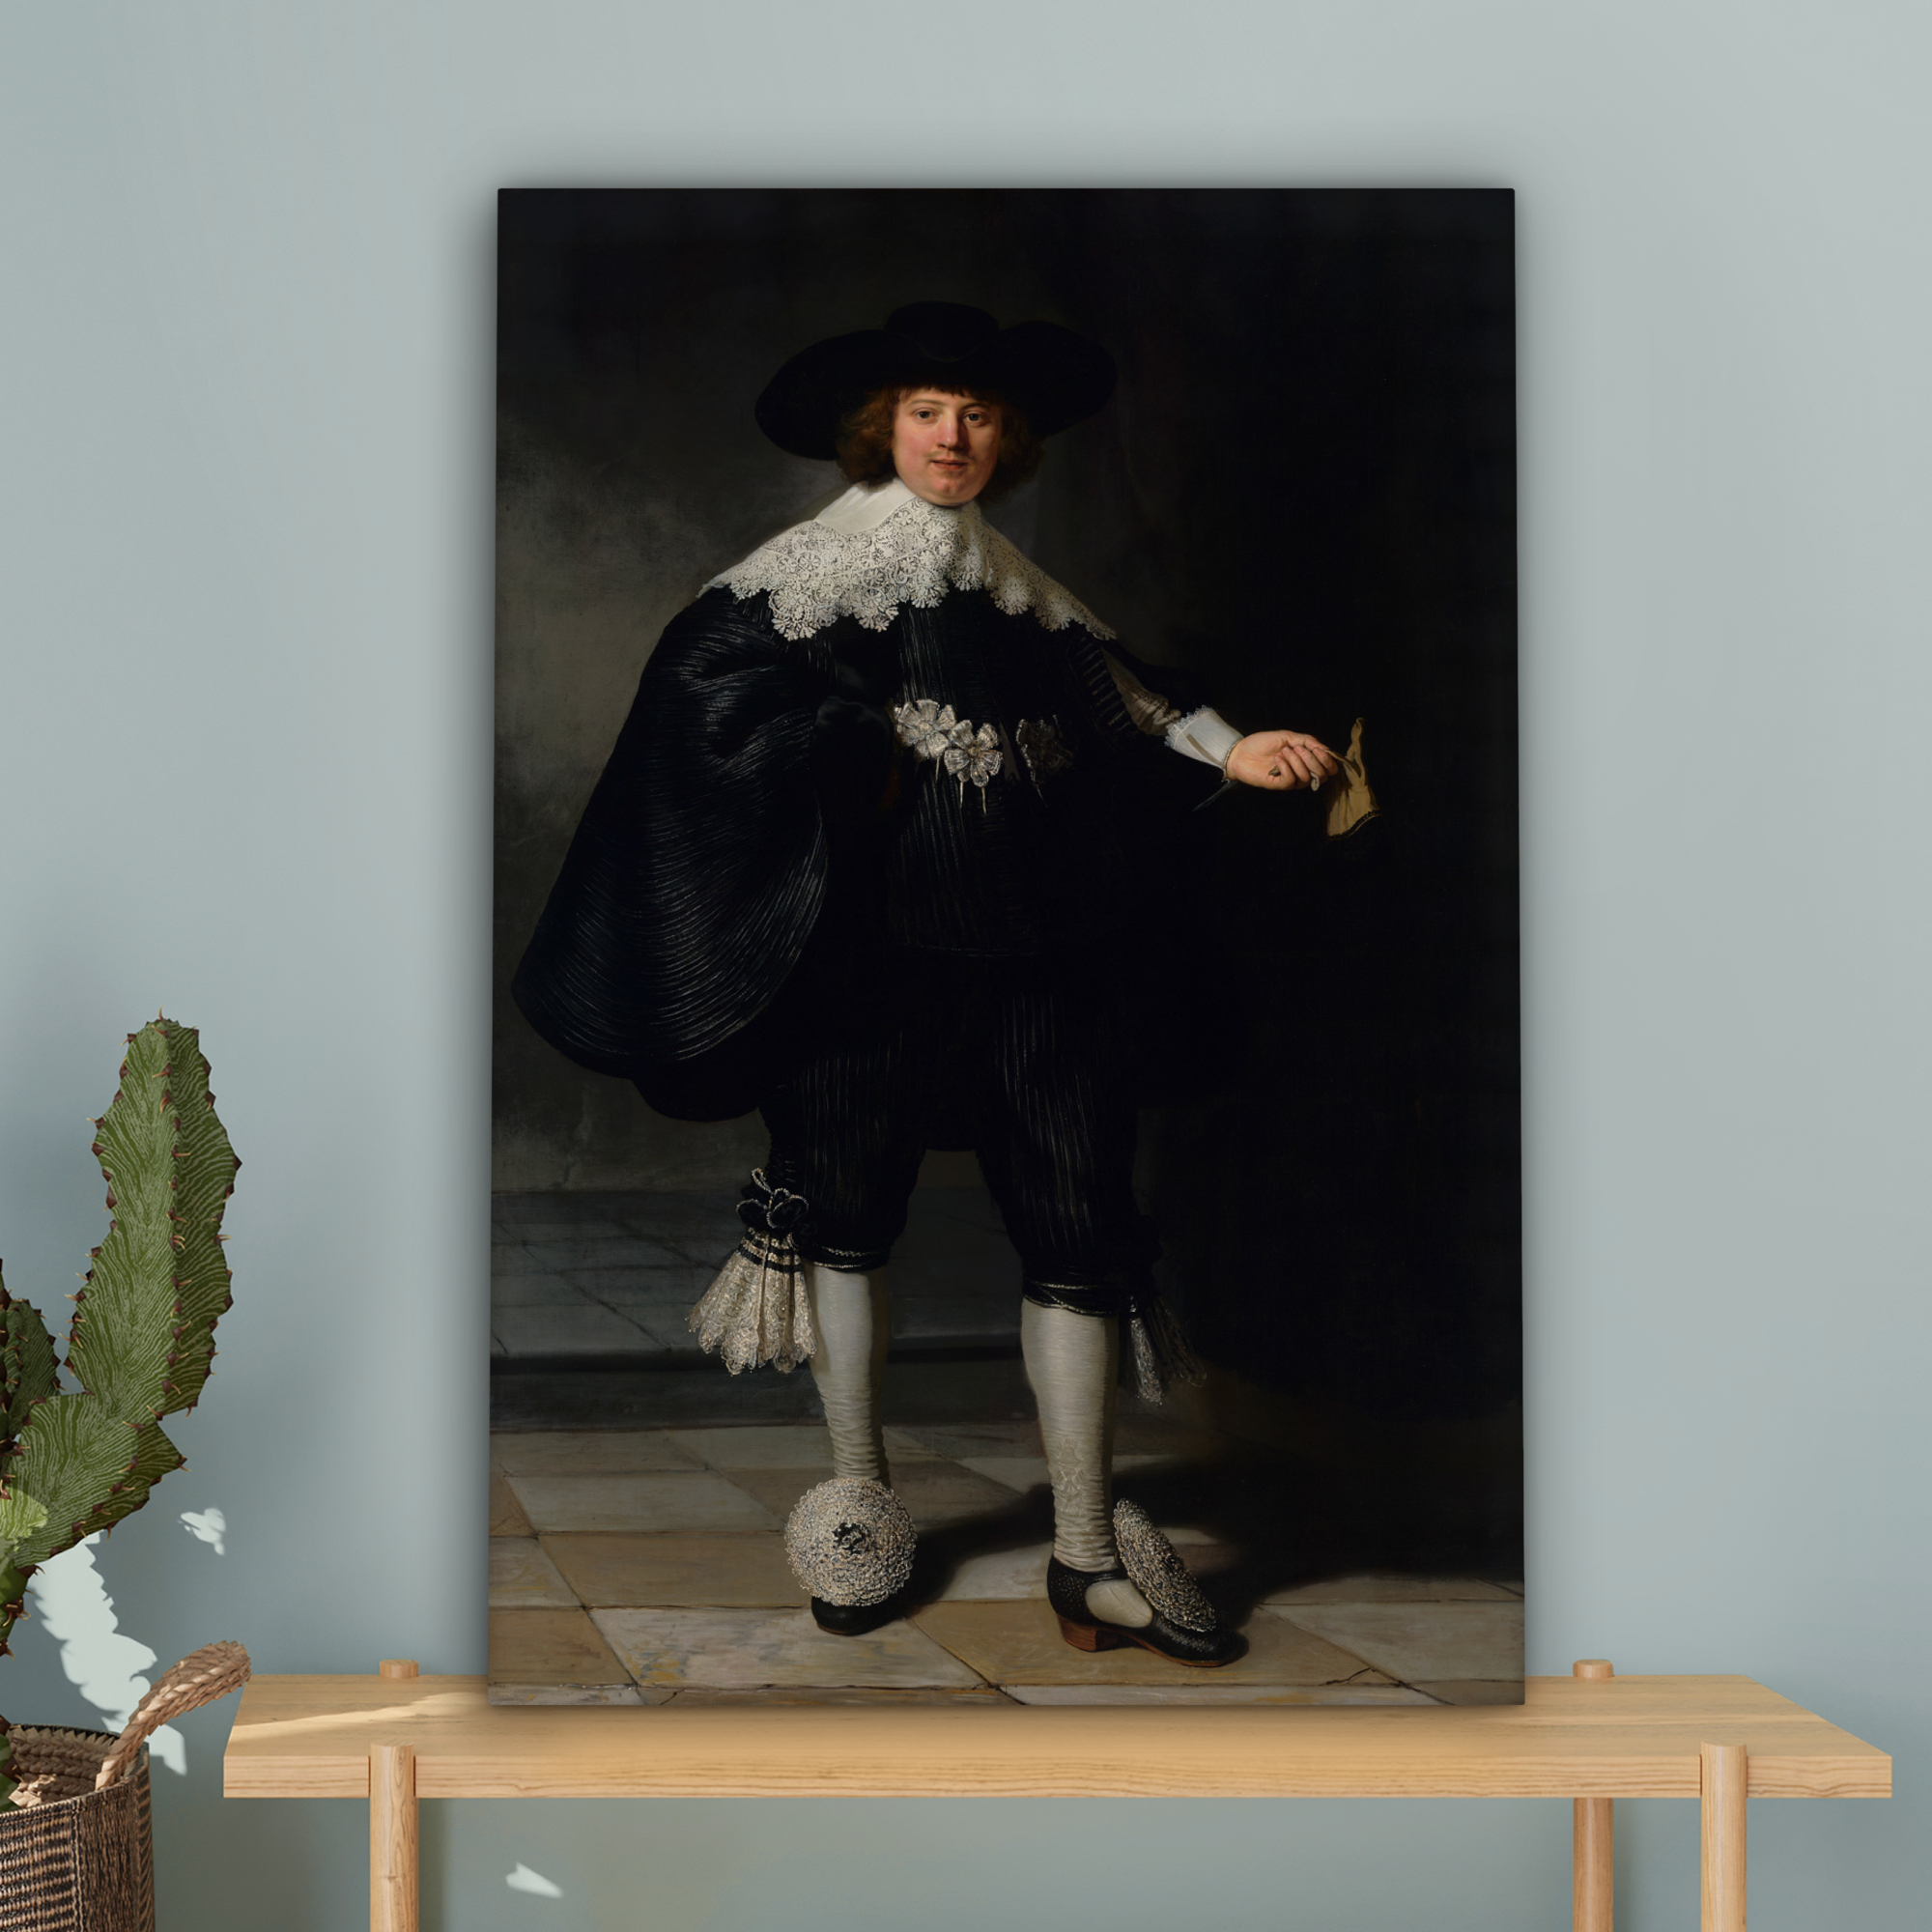 Leinwandbild - Das Hochzeitsbildnis von Marten Soolmans - Rembrandt van Rijn-4